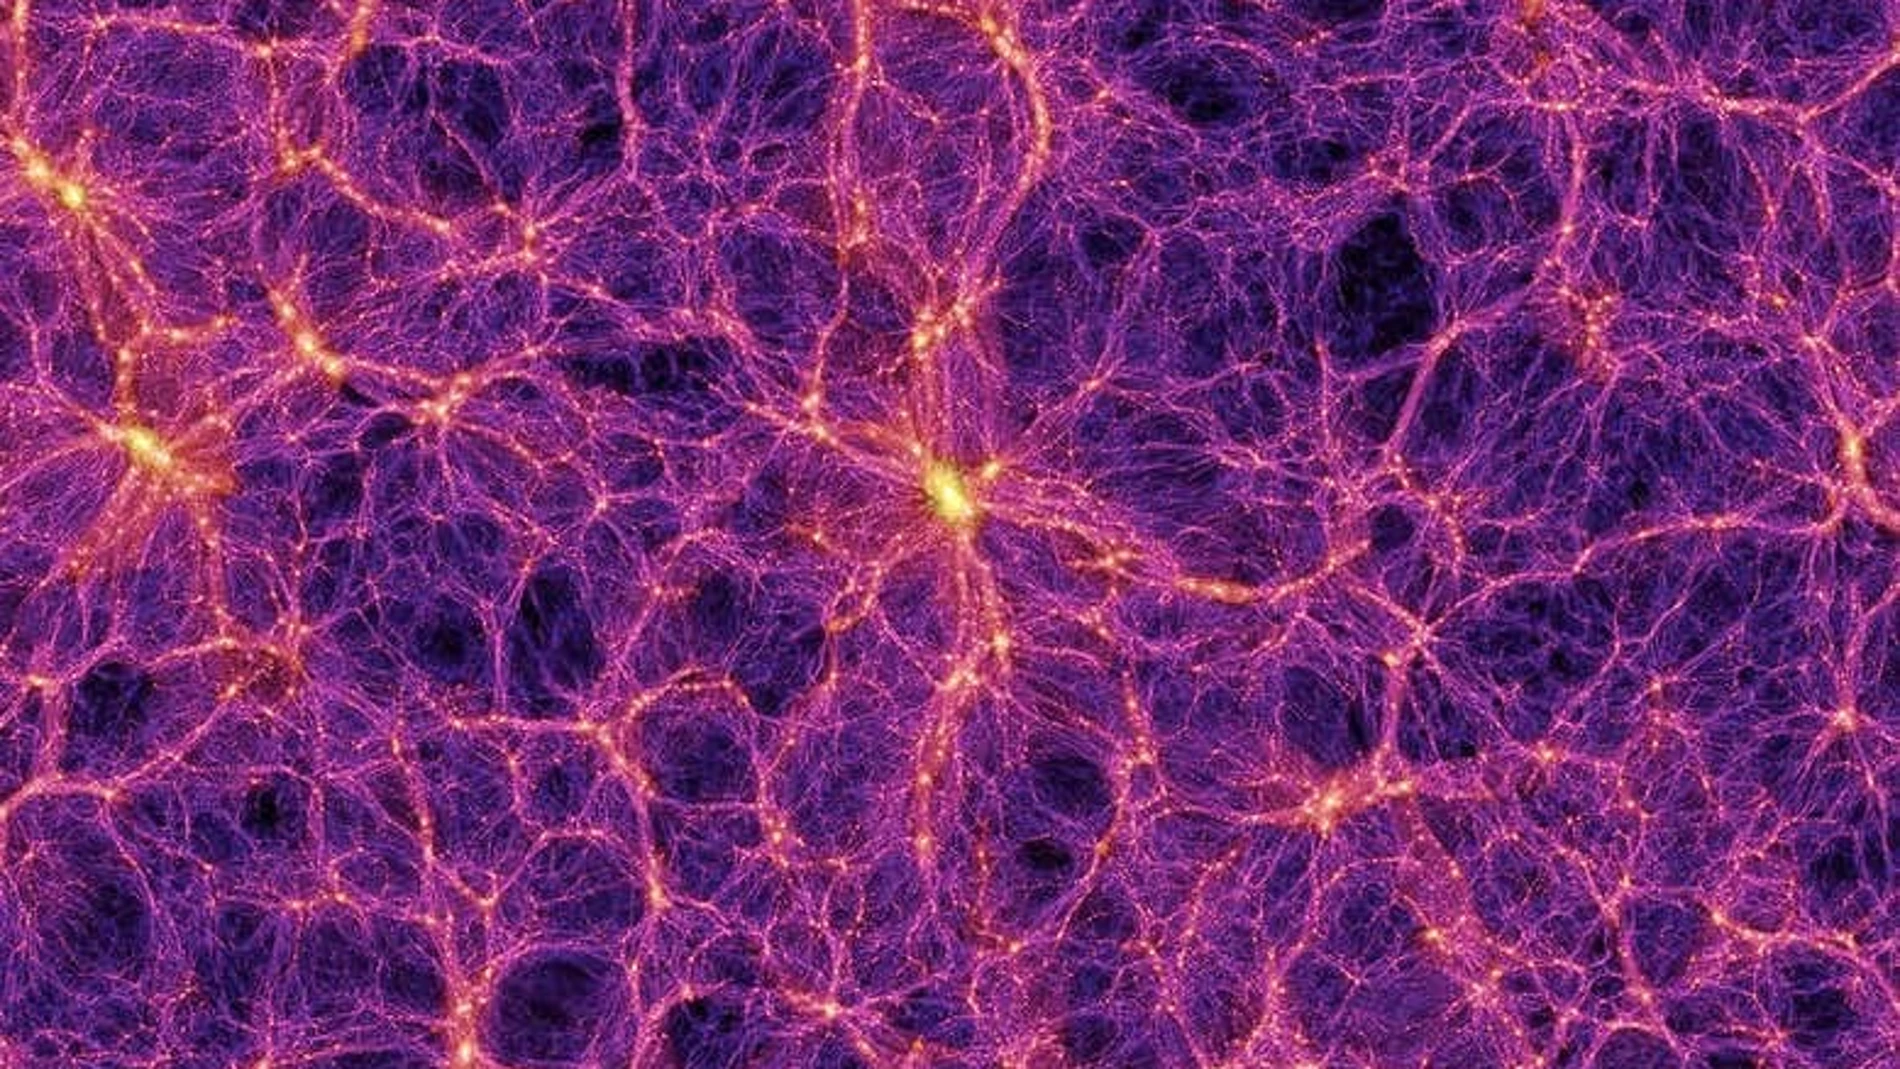 Reconstrucción por ordenador de la estructura a gran escala del universo, mostrando cómo las galaxias se organizan formando una suerte de red de materia.